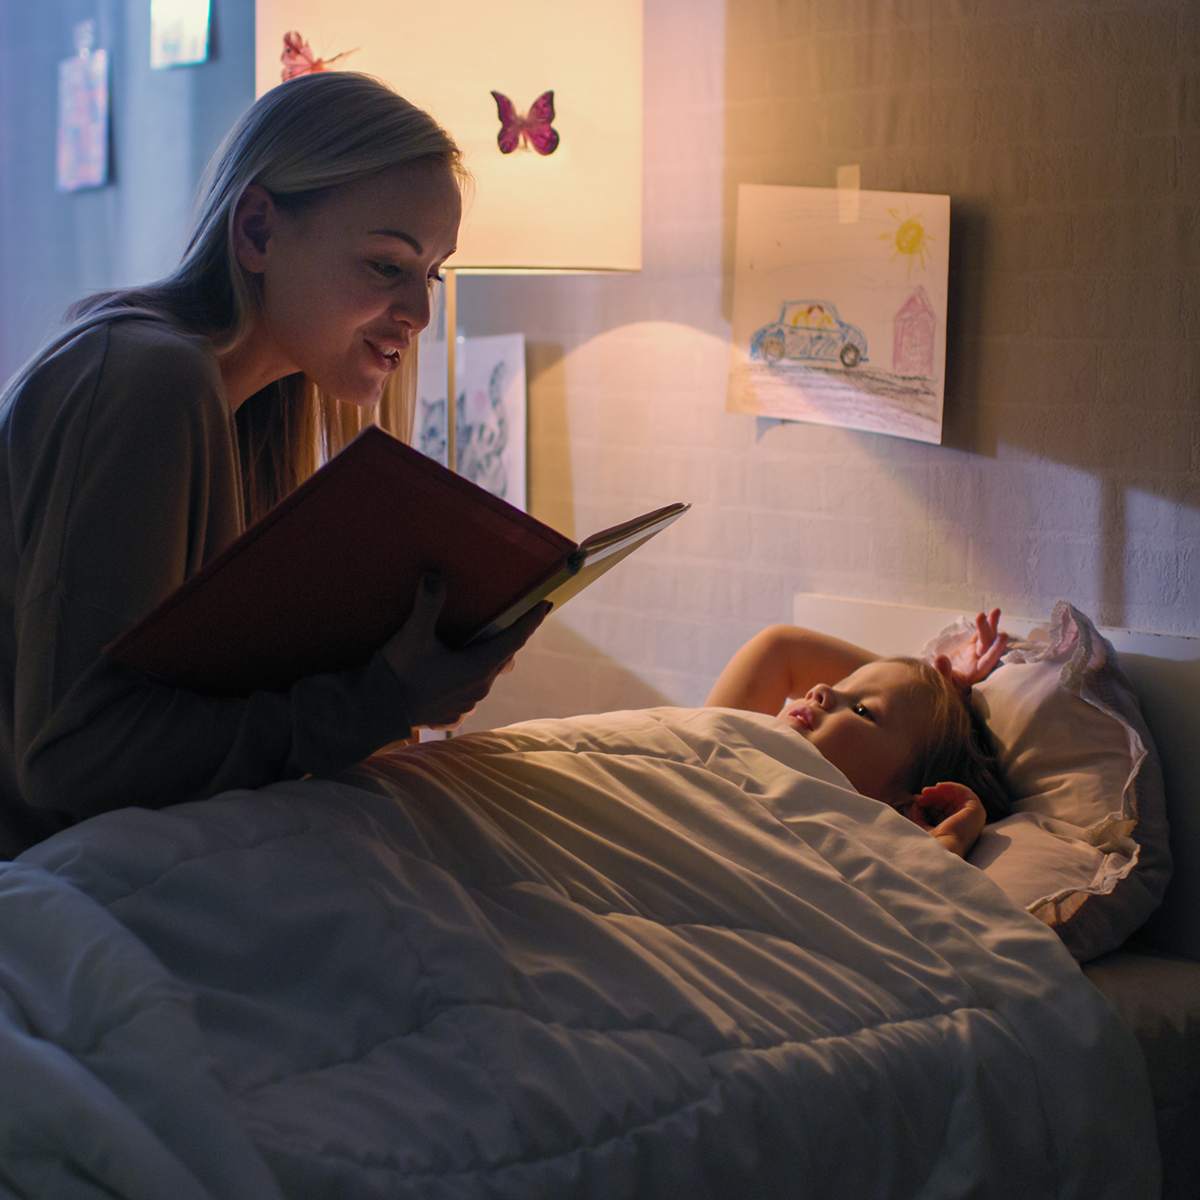 Няня укладывает спать. Мама читает сказку на ночь. Чтение на ночь детям. Няня на ночь. Няня укладывает ребенка спать.